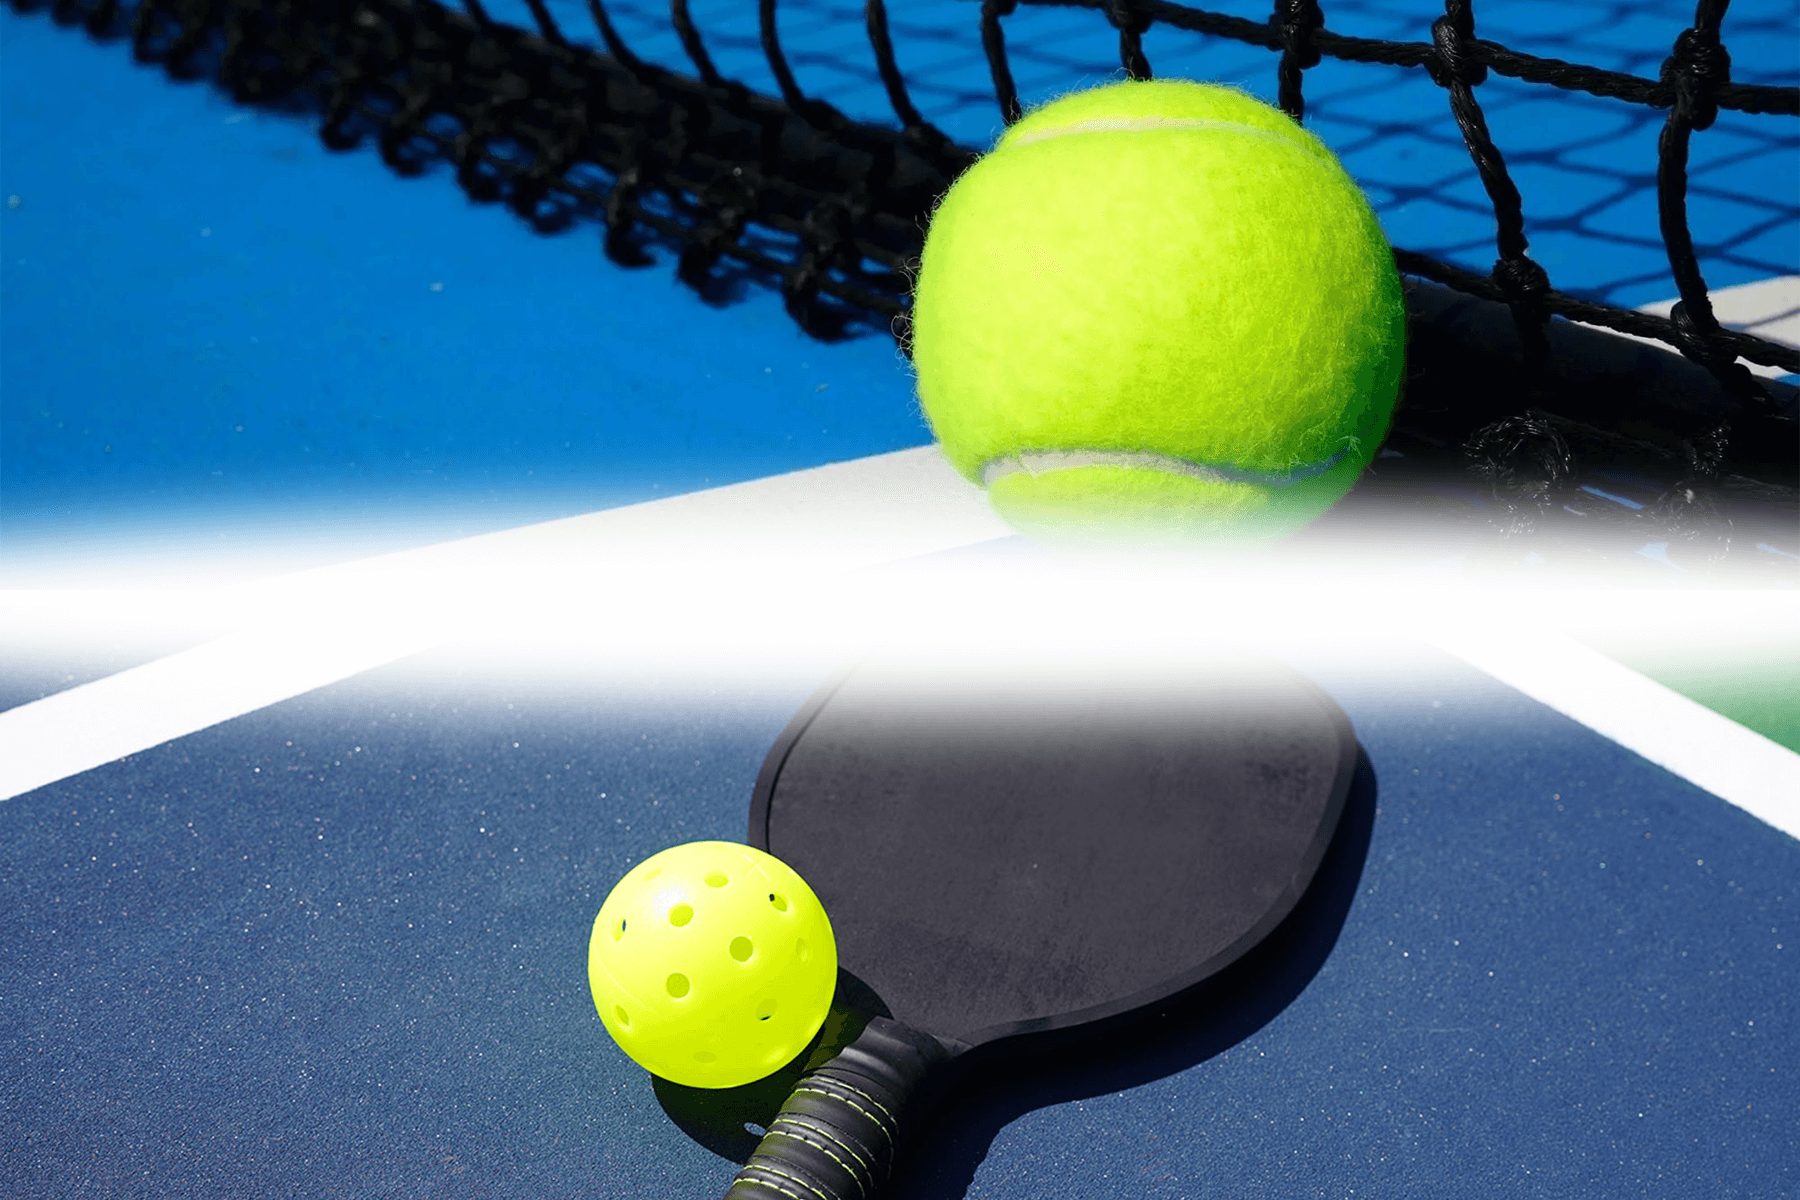 tennis vs pickleball